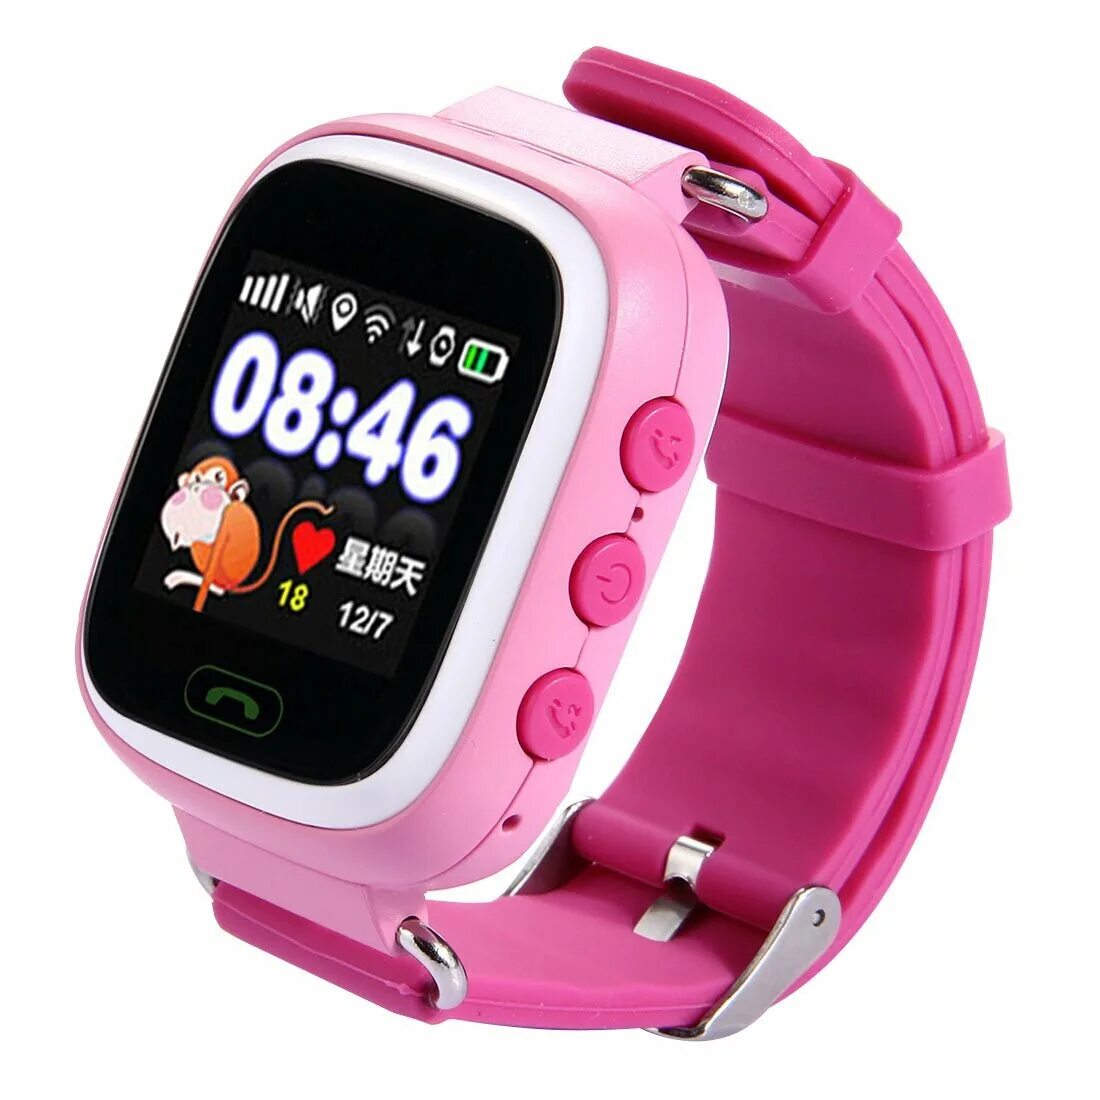 Какие детский смарт часы купить. GPS смарт часы детские часы q90. Смарт часы детские gw900. Детские cмарт-часы q90 розовые. Wonlex q90.